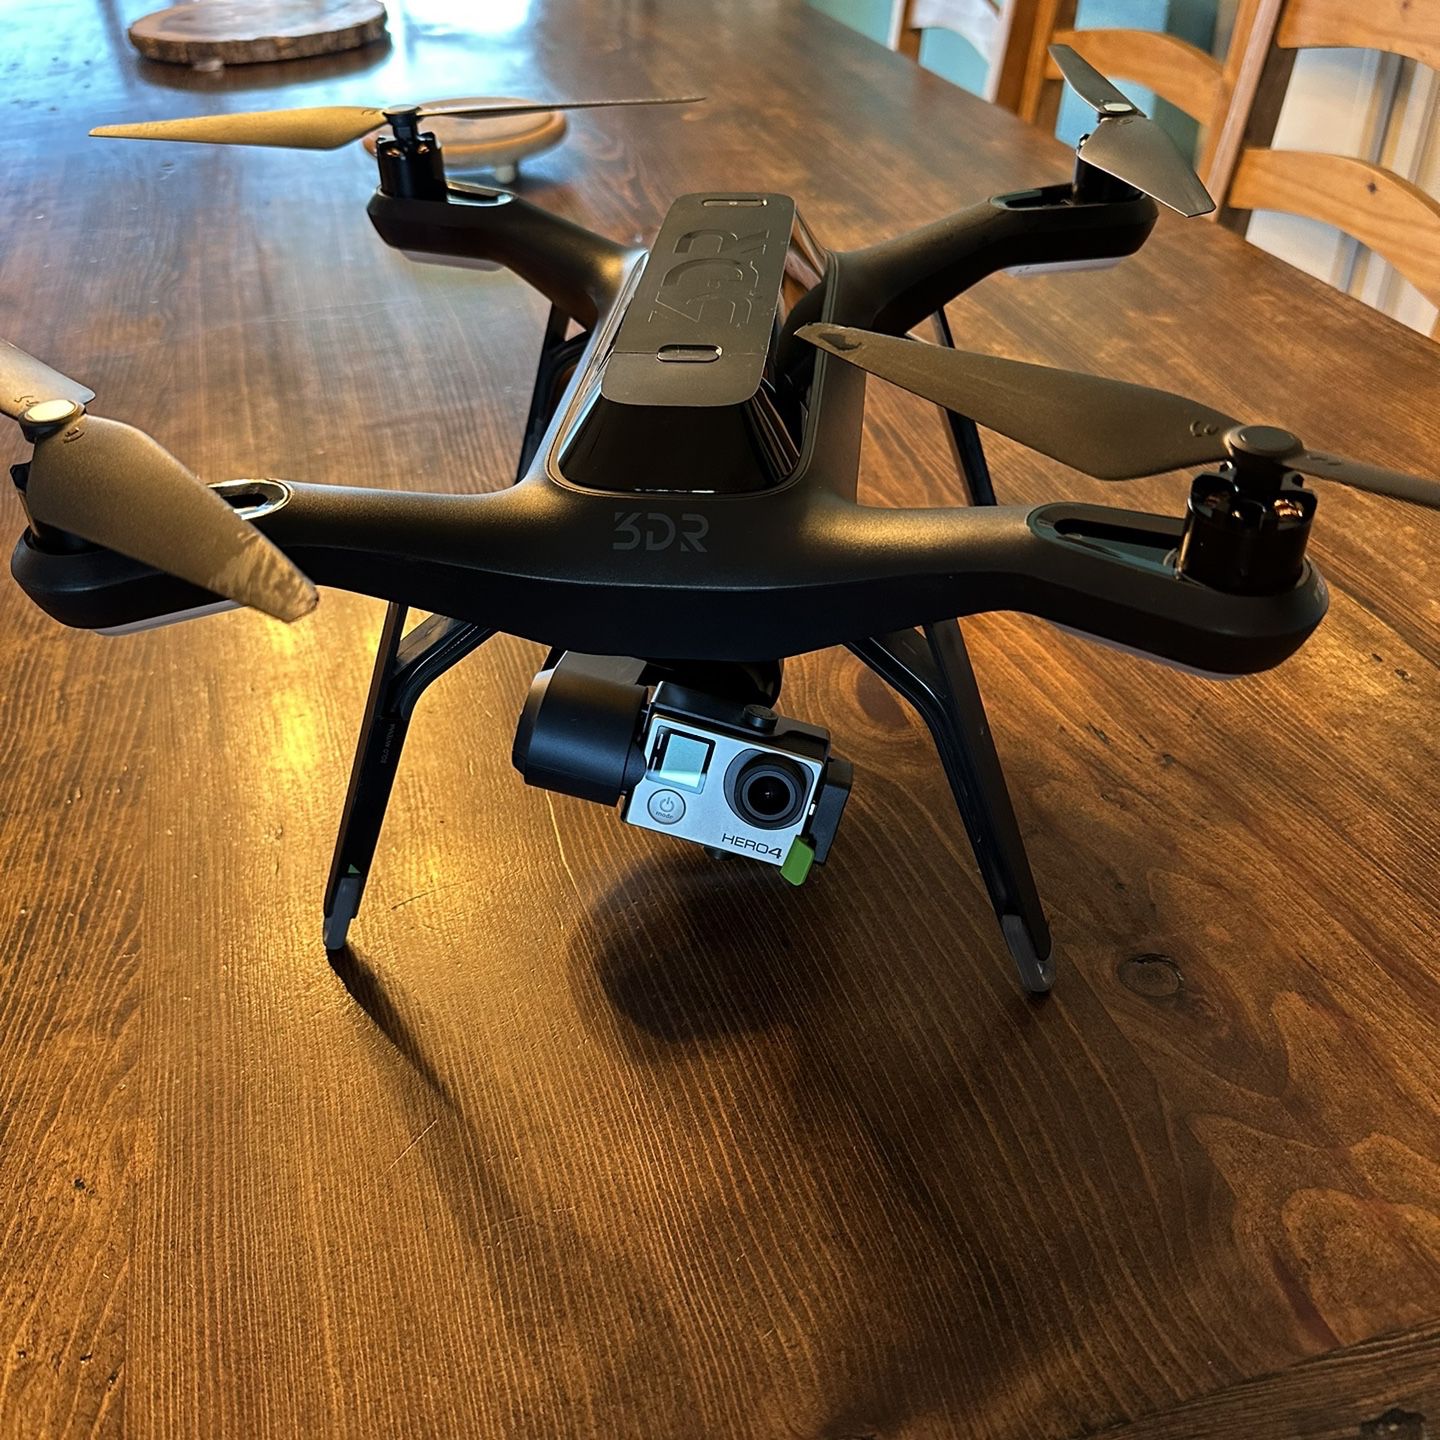 Drone + GoPro Hero4